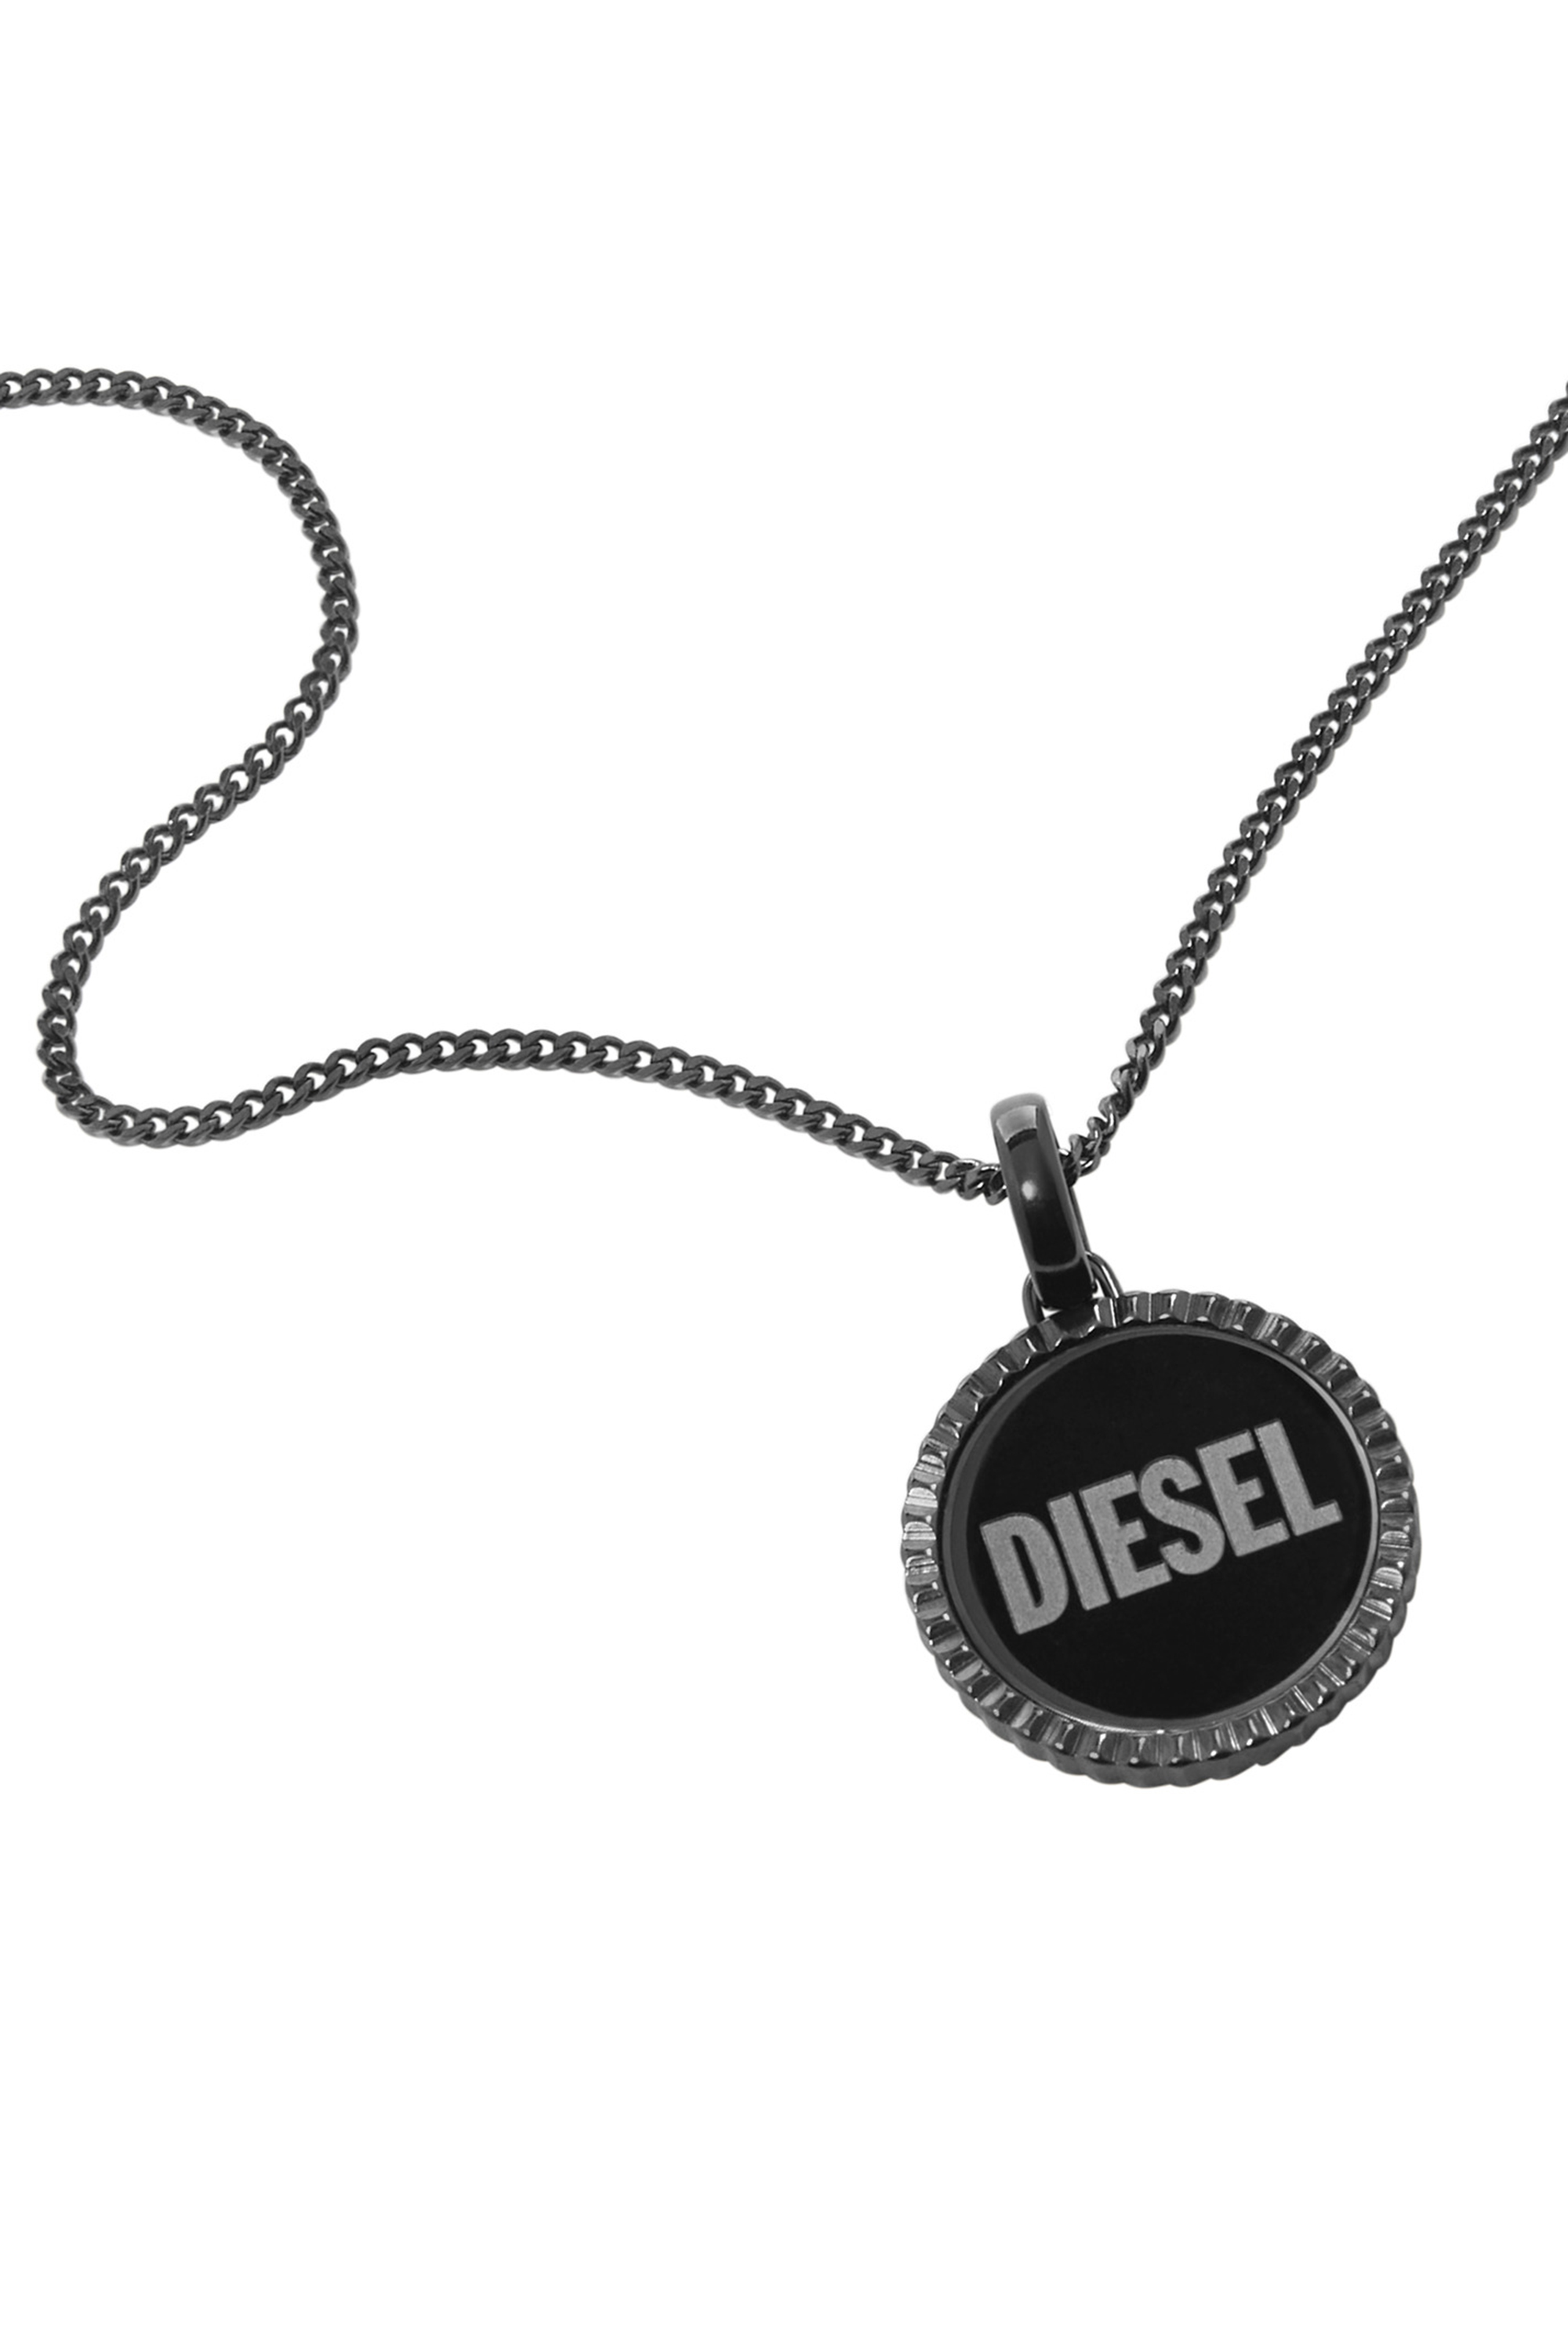 Diesel Collana In Acciaio Inossidabile Canna Di Fucile Con Ciondolo In Nero